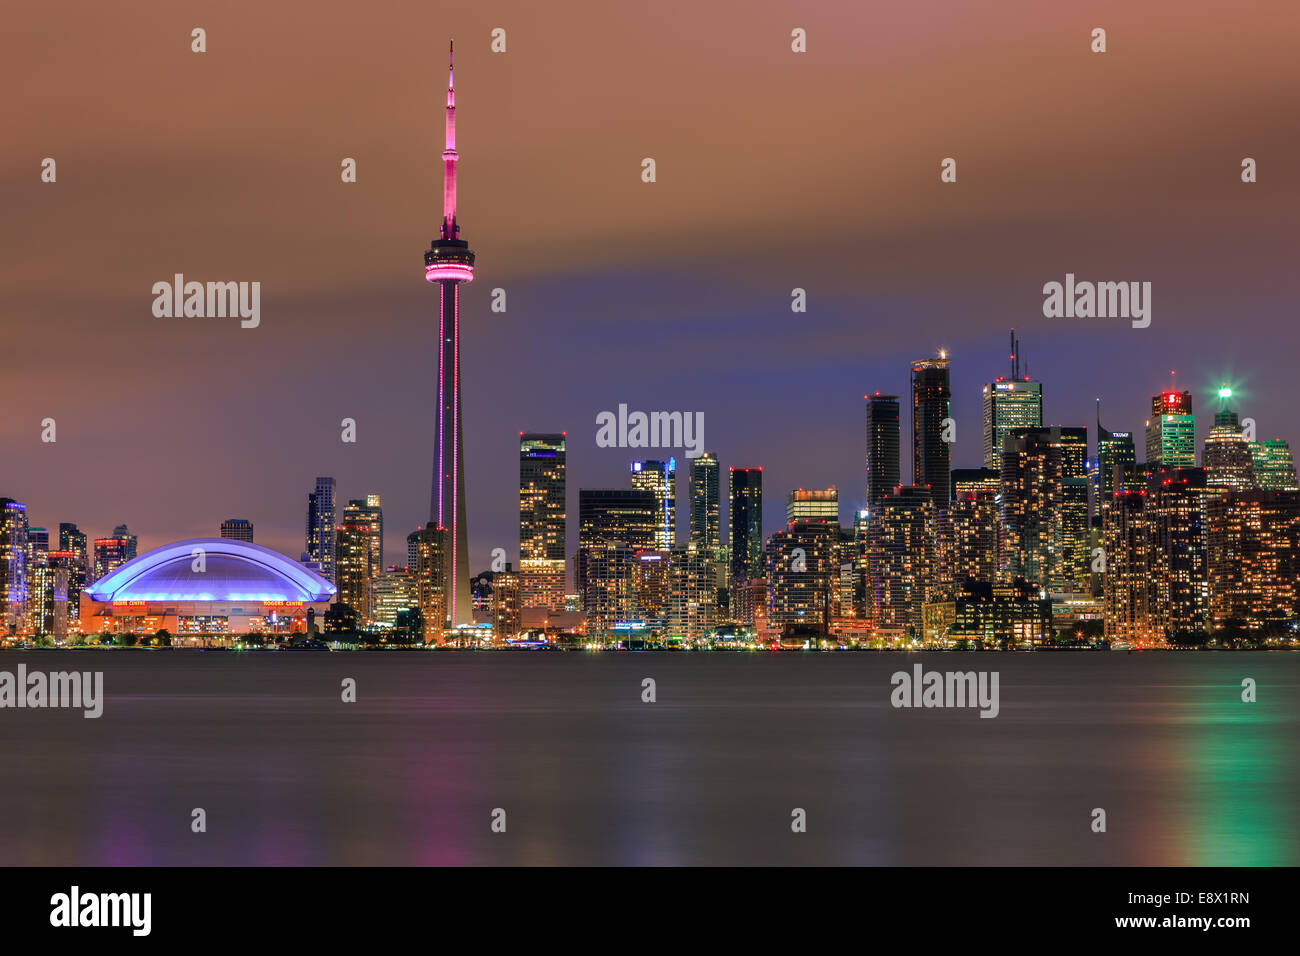 Célèbre ville de Toronto avec la Tour CN et le Centre Rogers après le coucher du soleil prises depuis les îles de Toronto. Banque D'Images